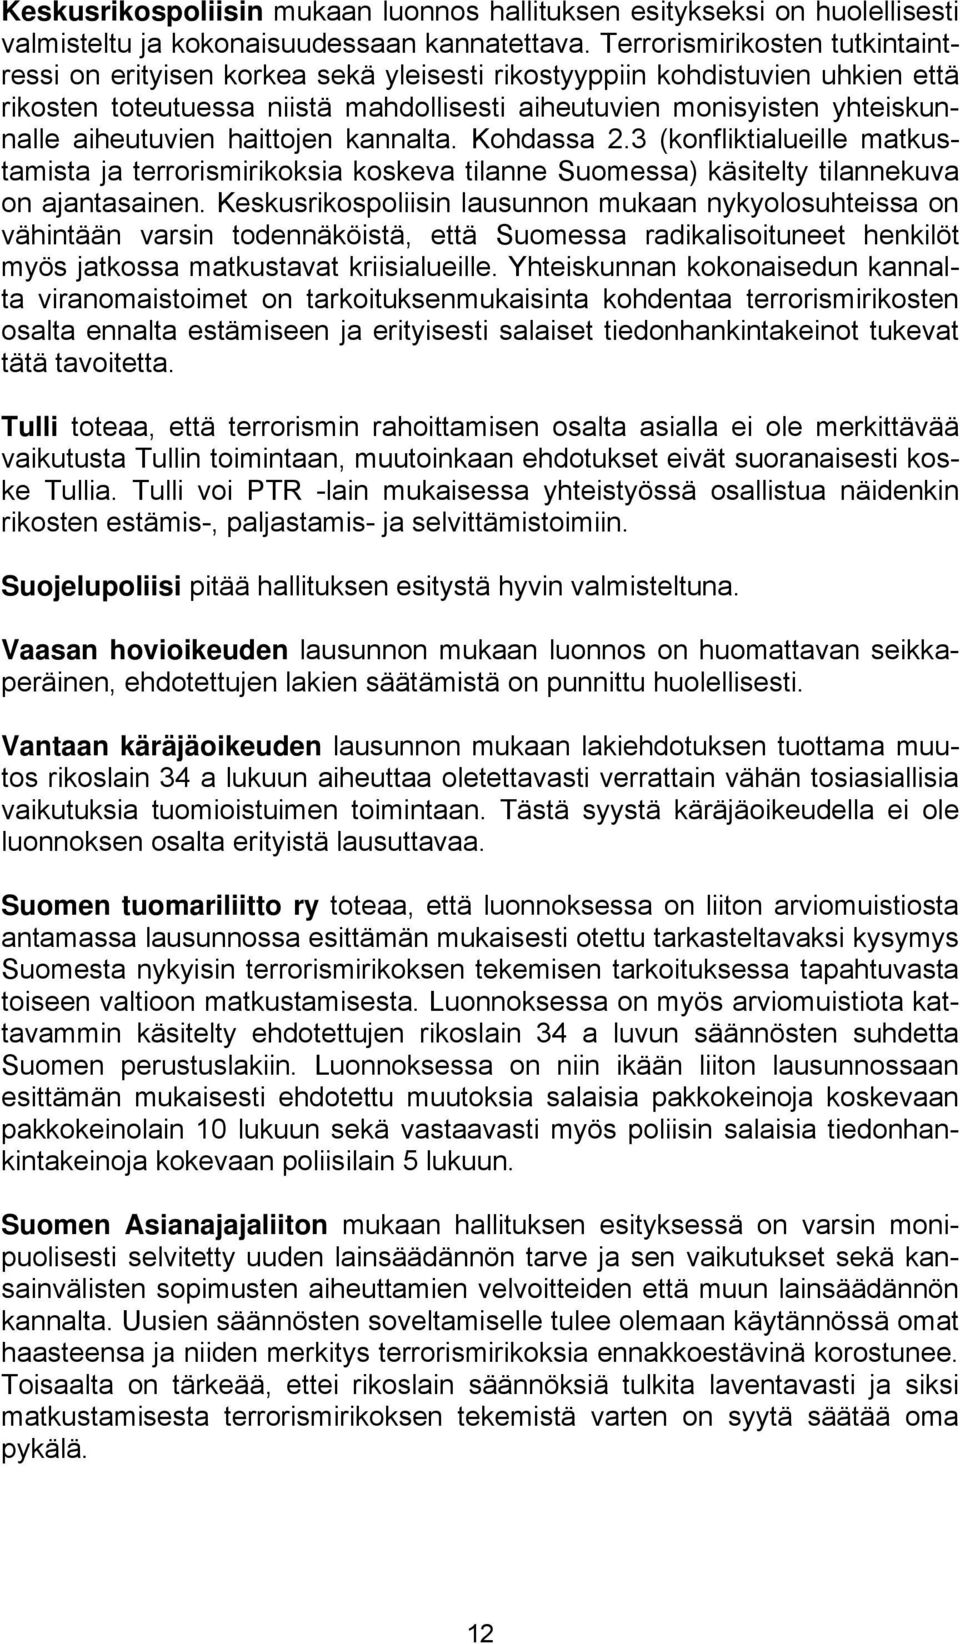 aiheutuvien haittojen kannalta. Kohdassa 2.3 (konfliktialueille matkustamista ja terrorismirikoksia koskeva tilanne Suomessa) käsitelty tilannekuva on ajantasainen.